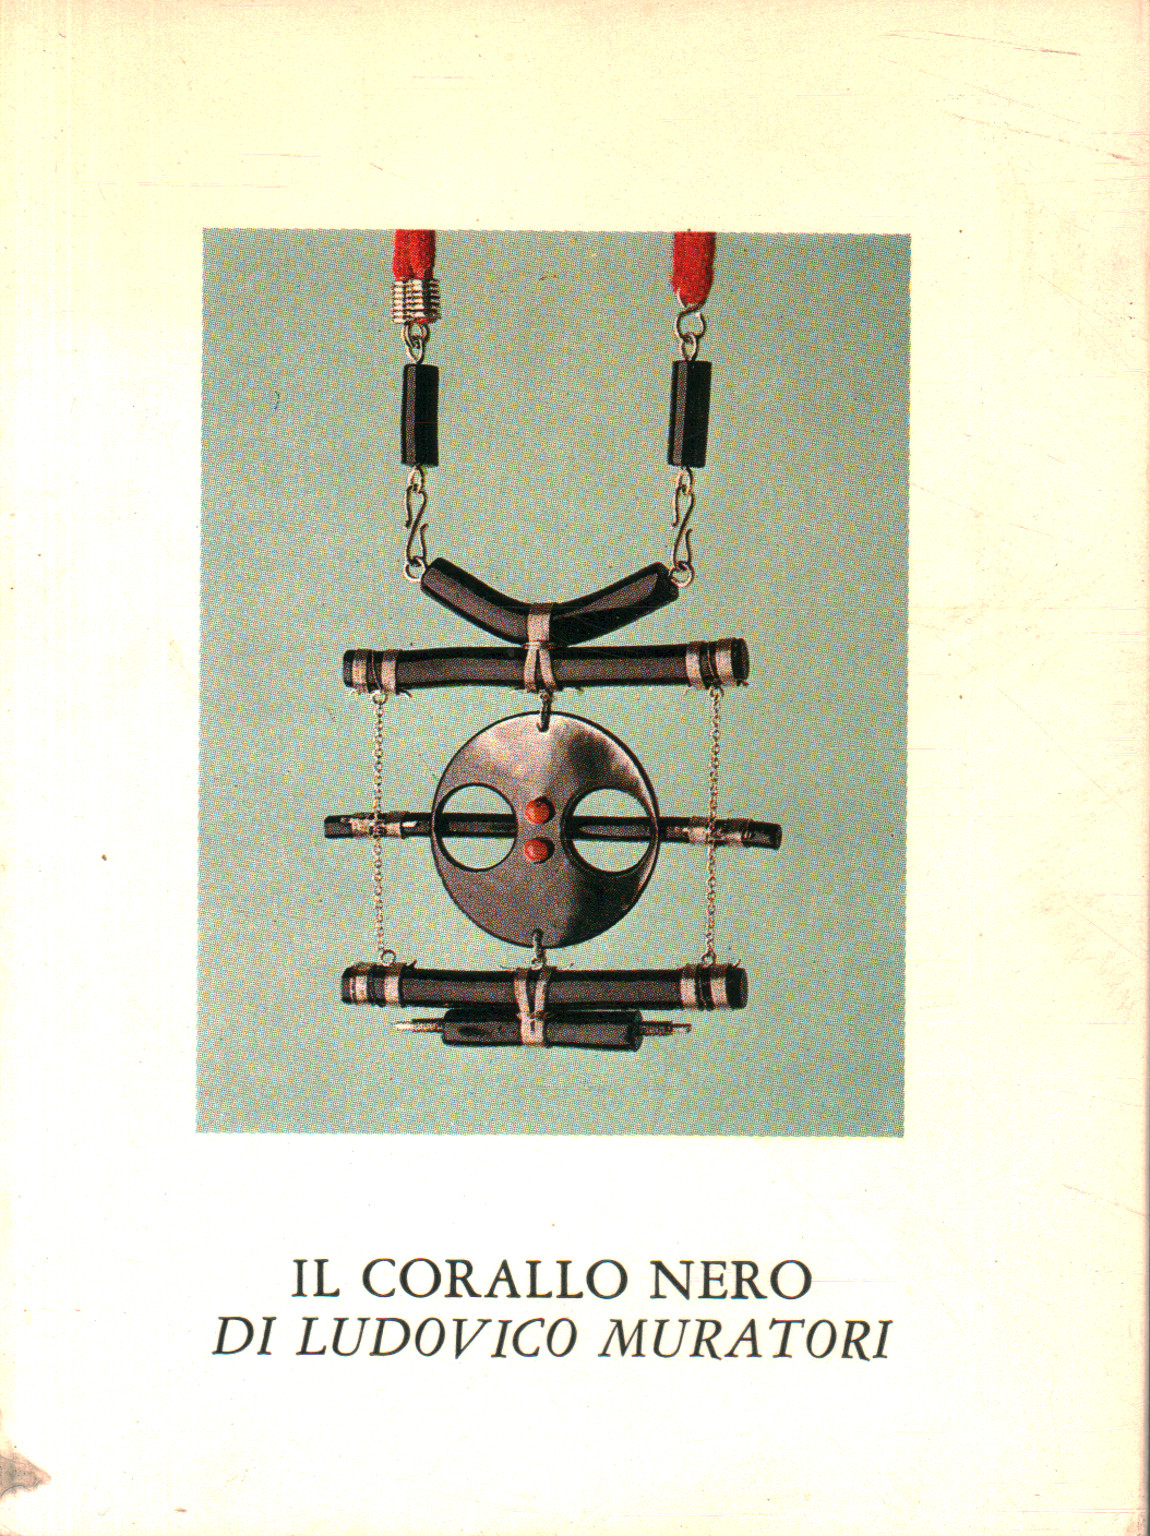 The black coral by Ludovico Muratori, Ludovico Muratori